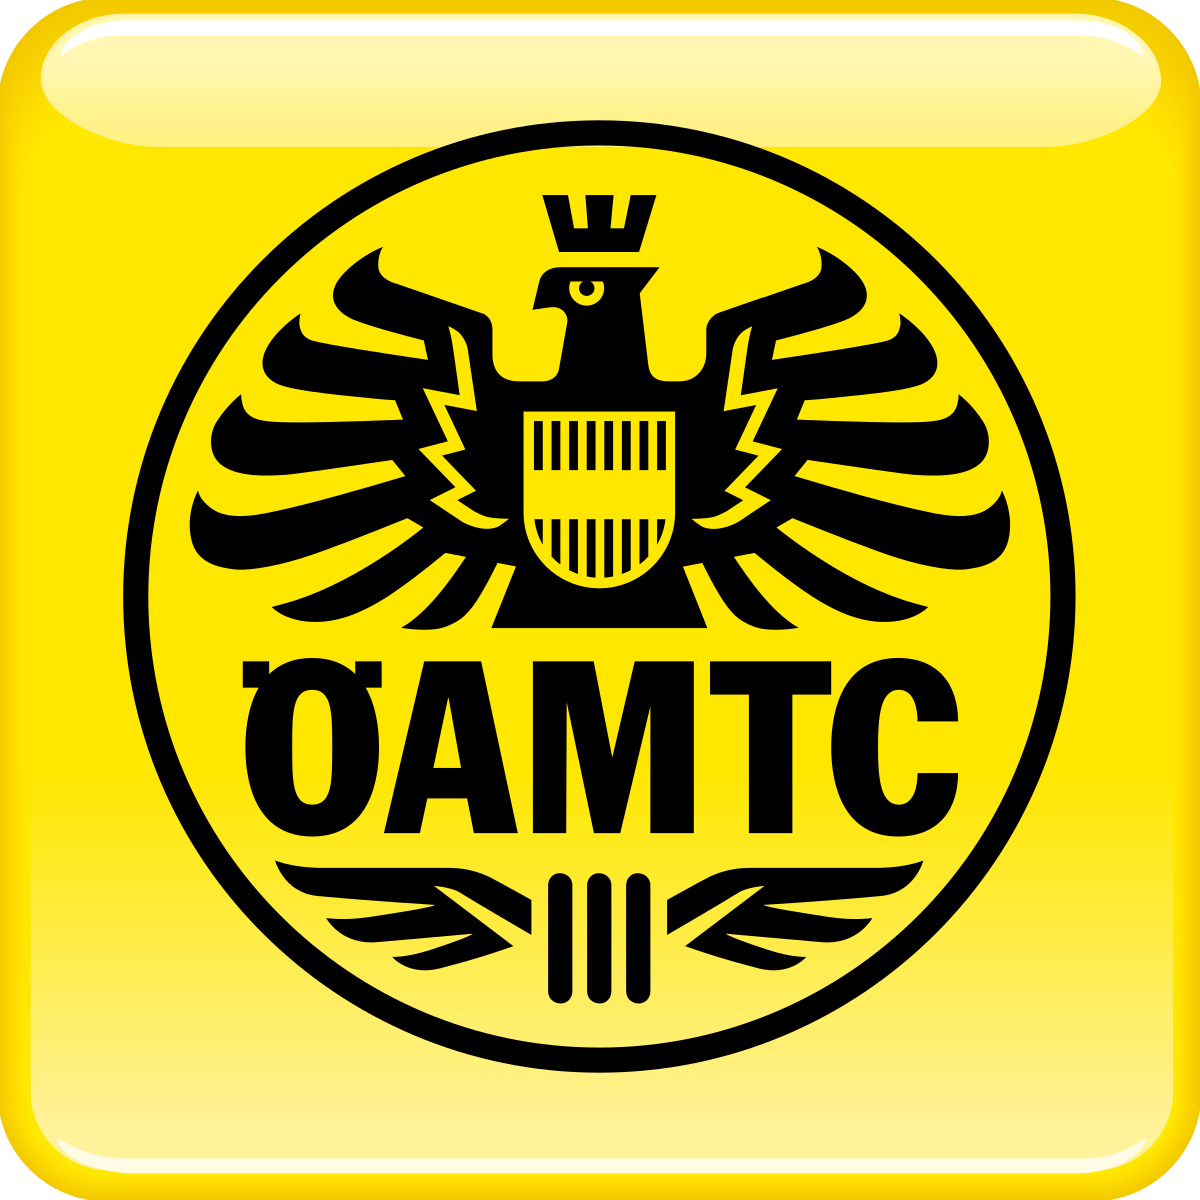 OeAMTC Logo photo - 1